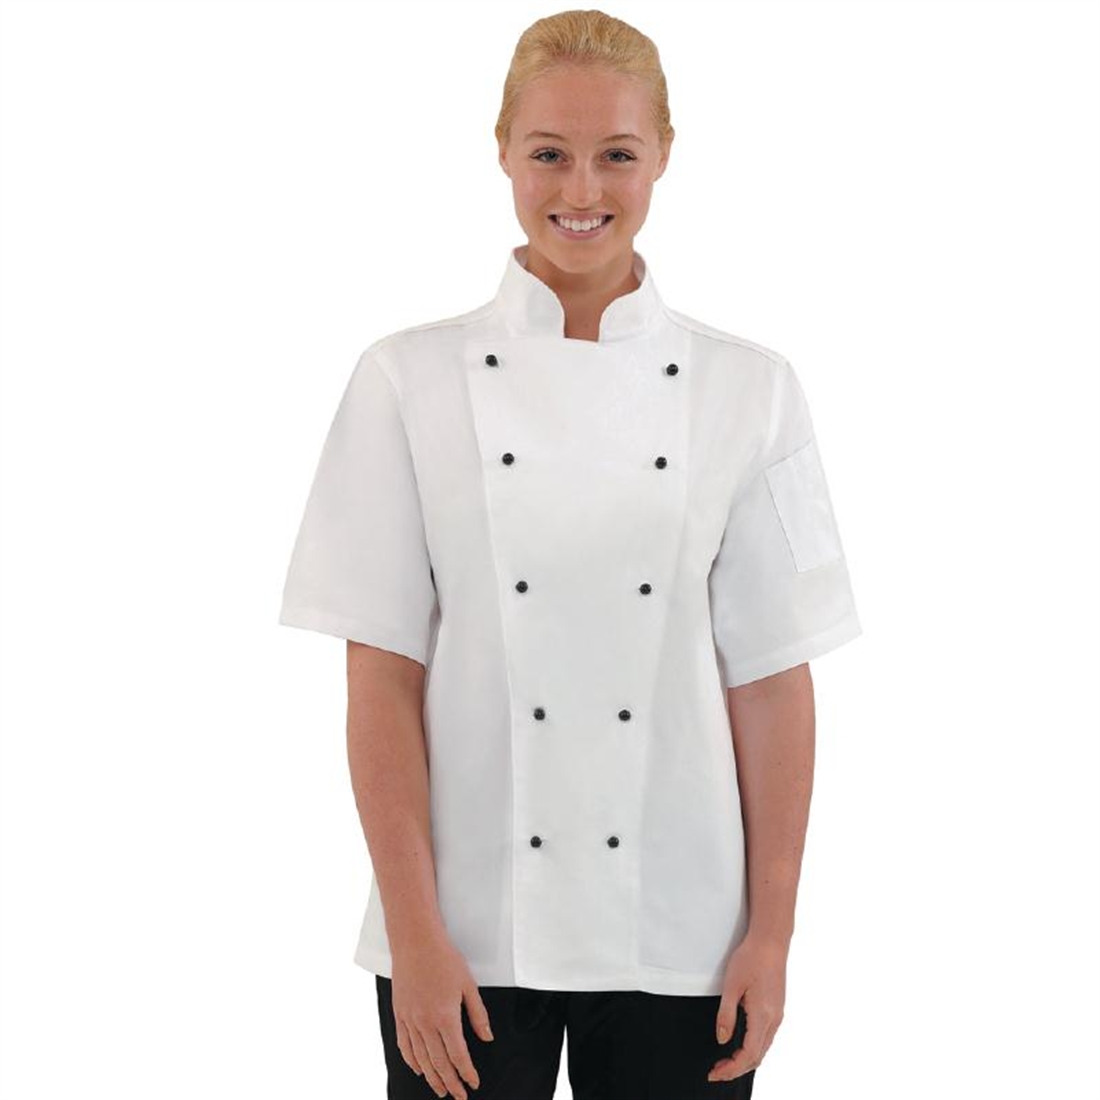 Whites Chicago Unisex Chefs Jacket Short Sleeve